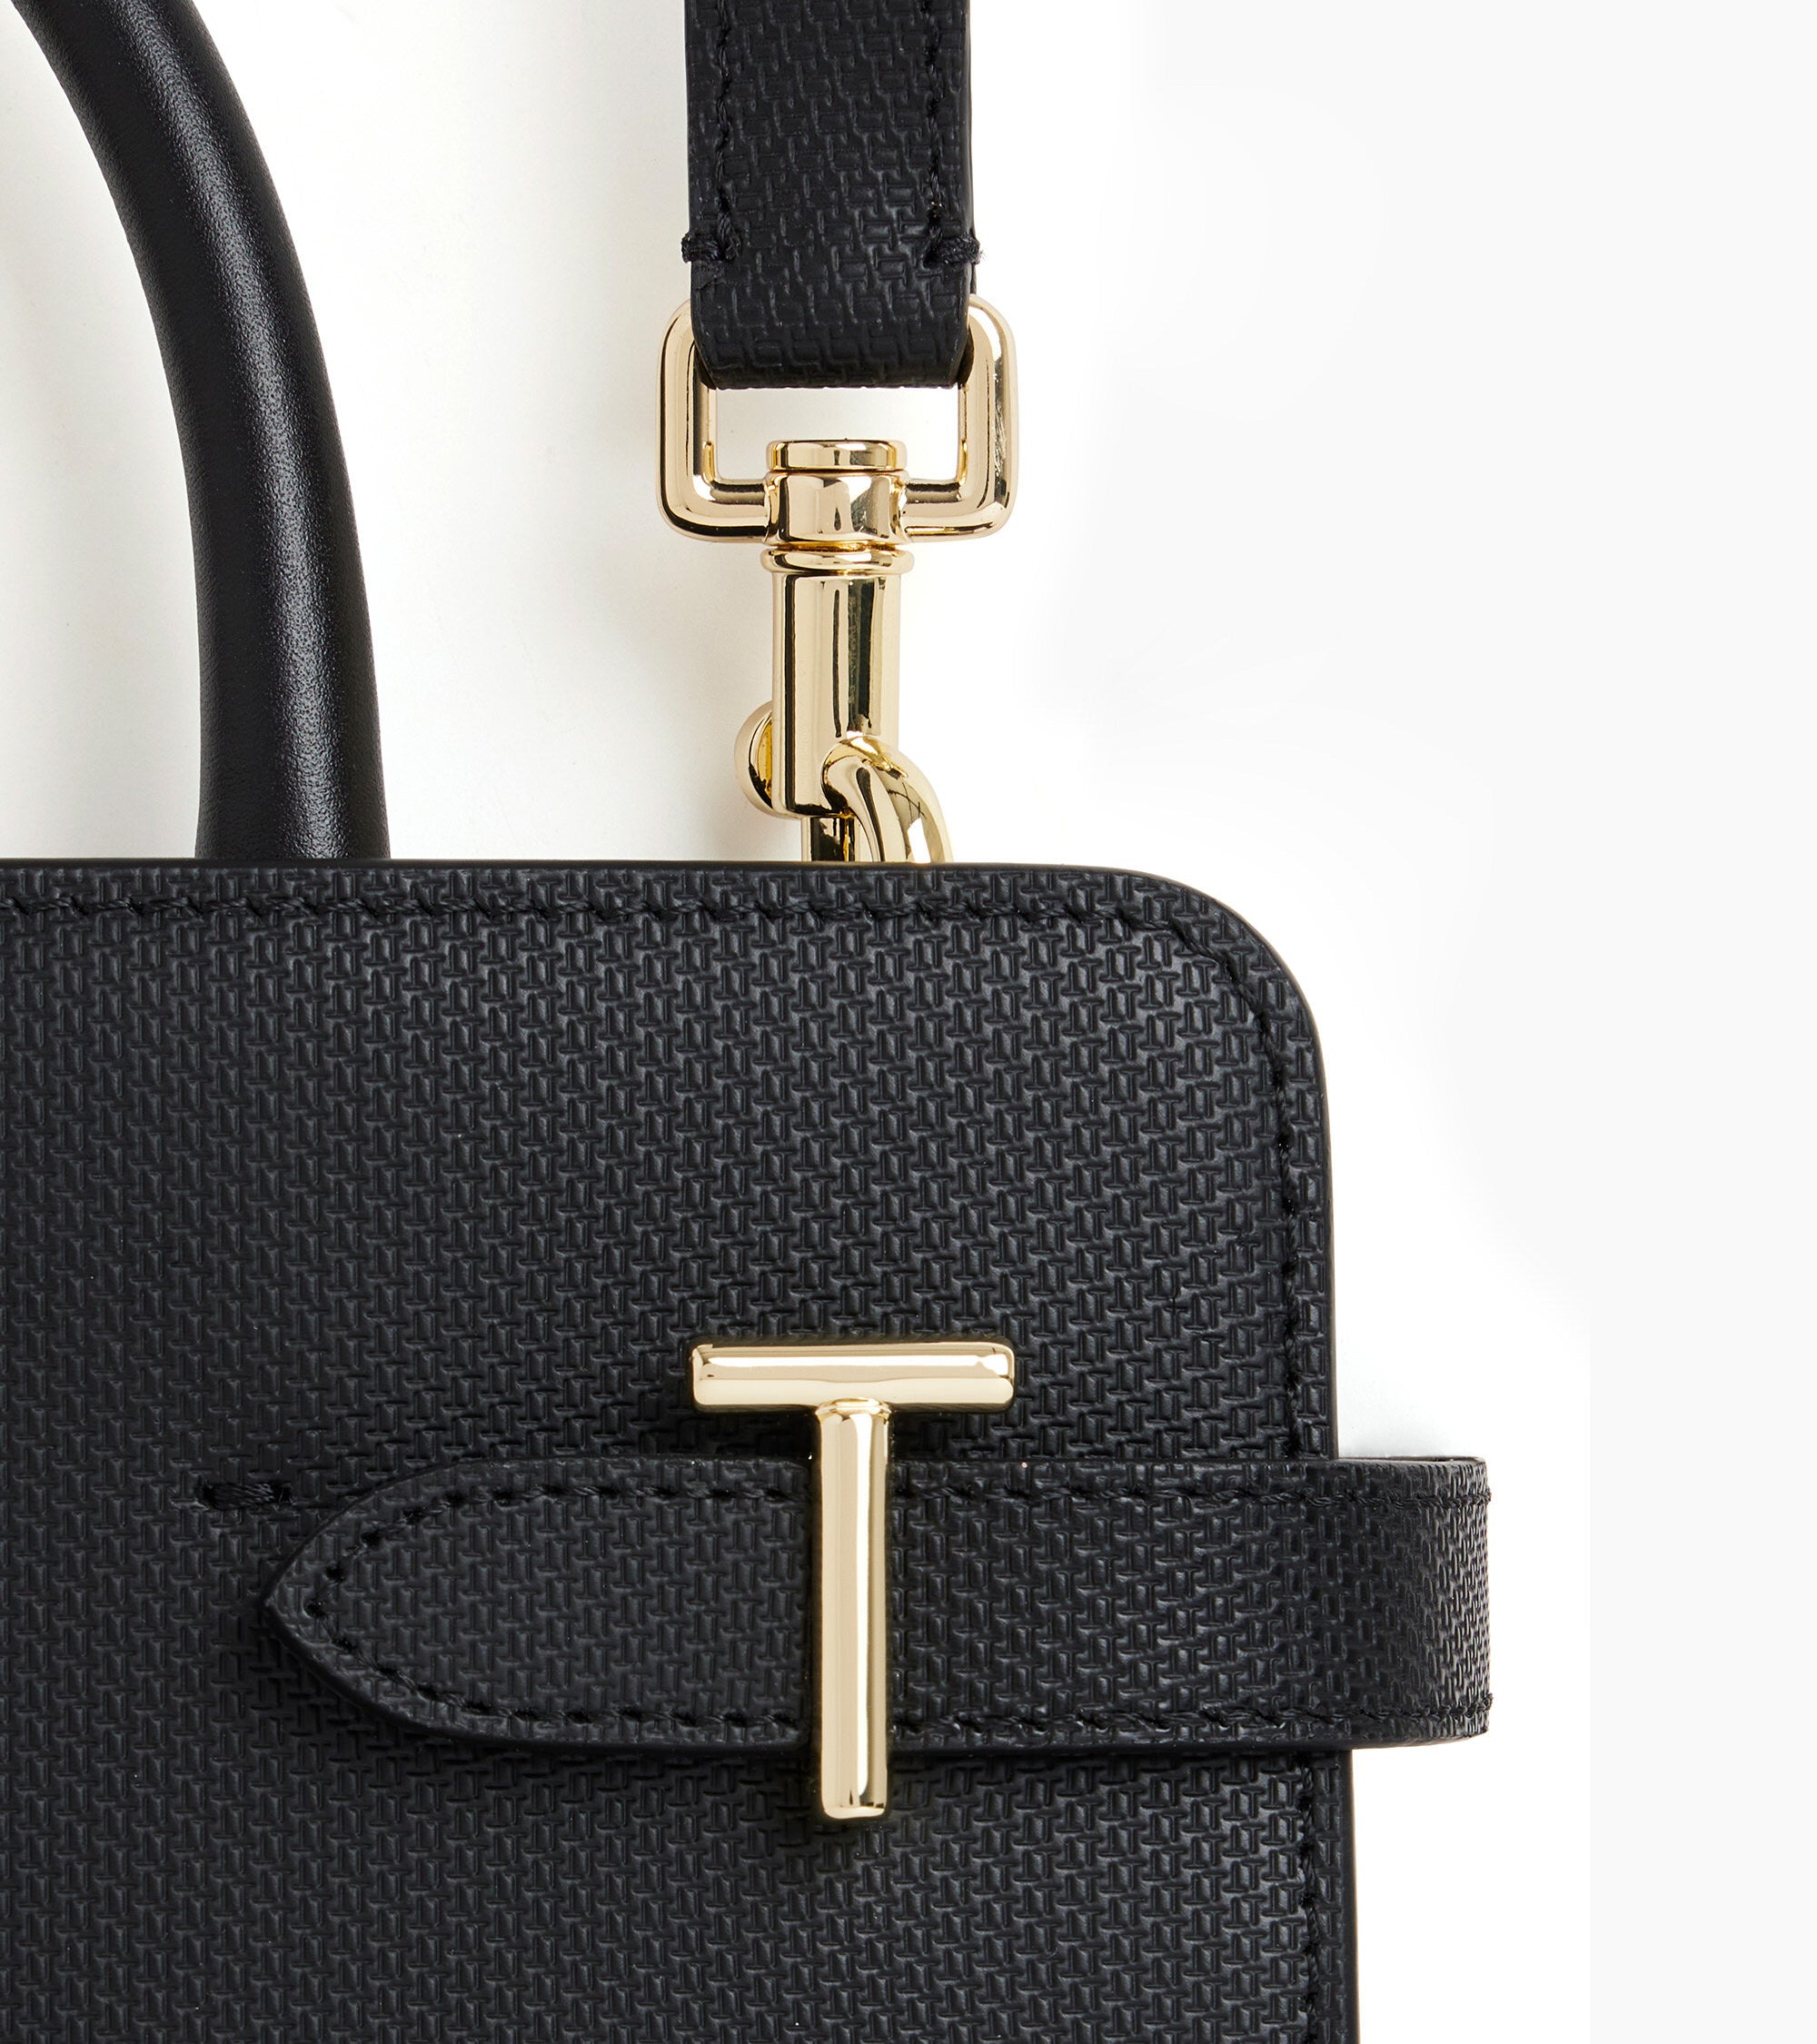 Medium Emilie T signature leather handbag